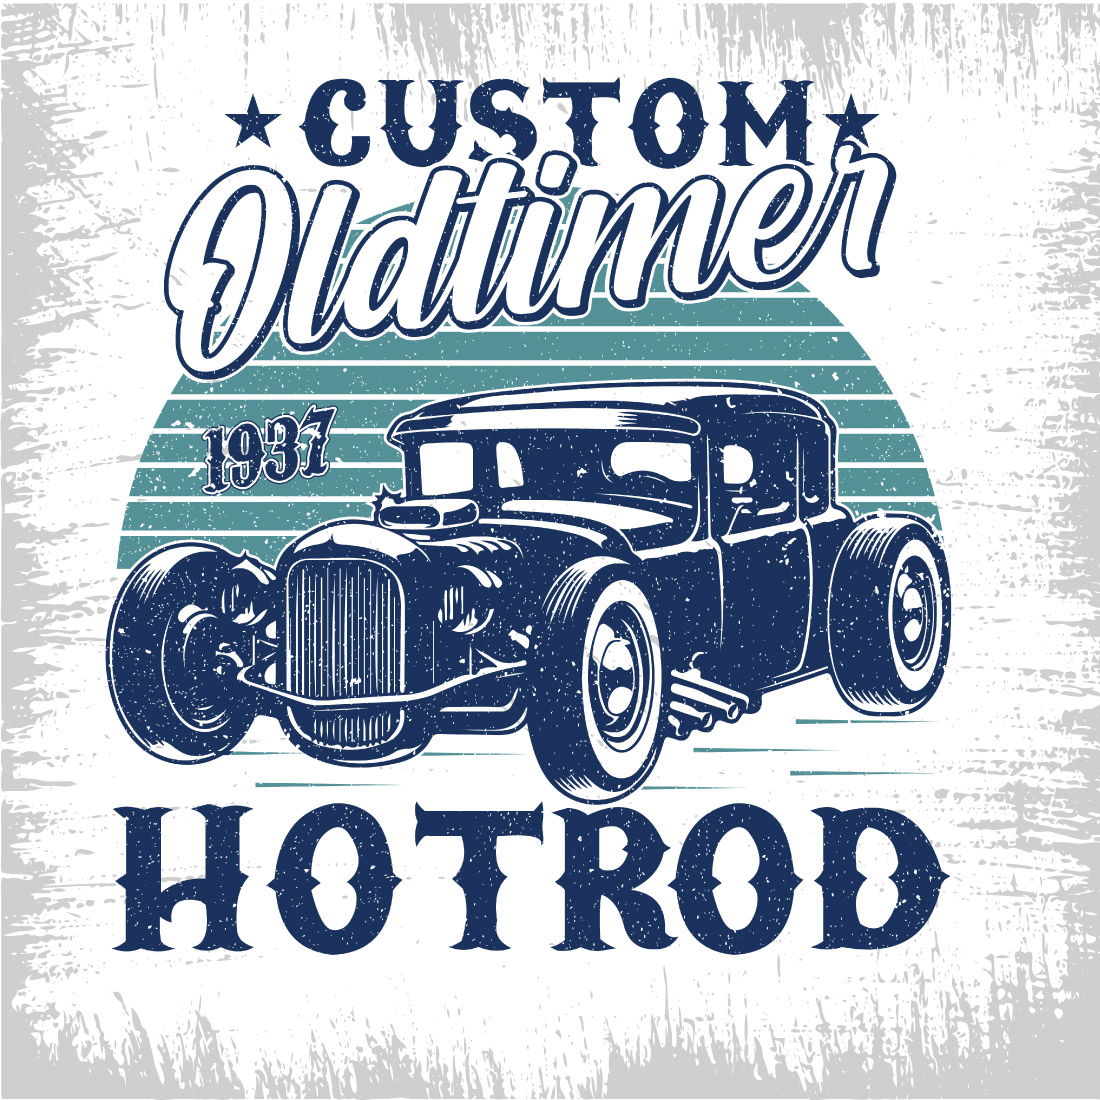 Custom oldtimer 1937 hotrod - hot rod t shirt design preview image.